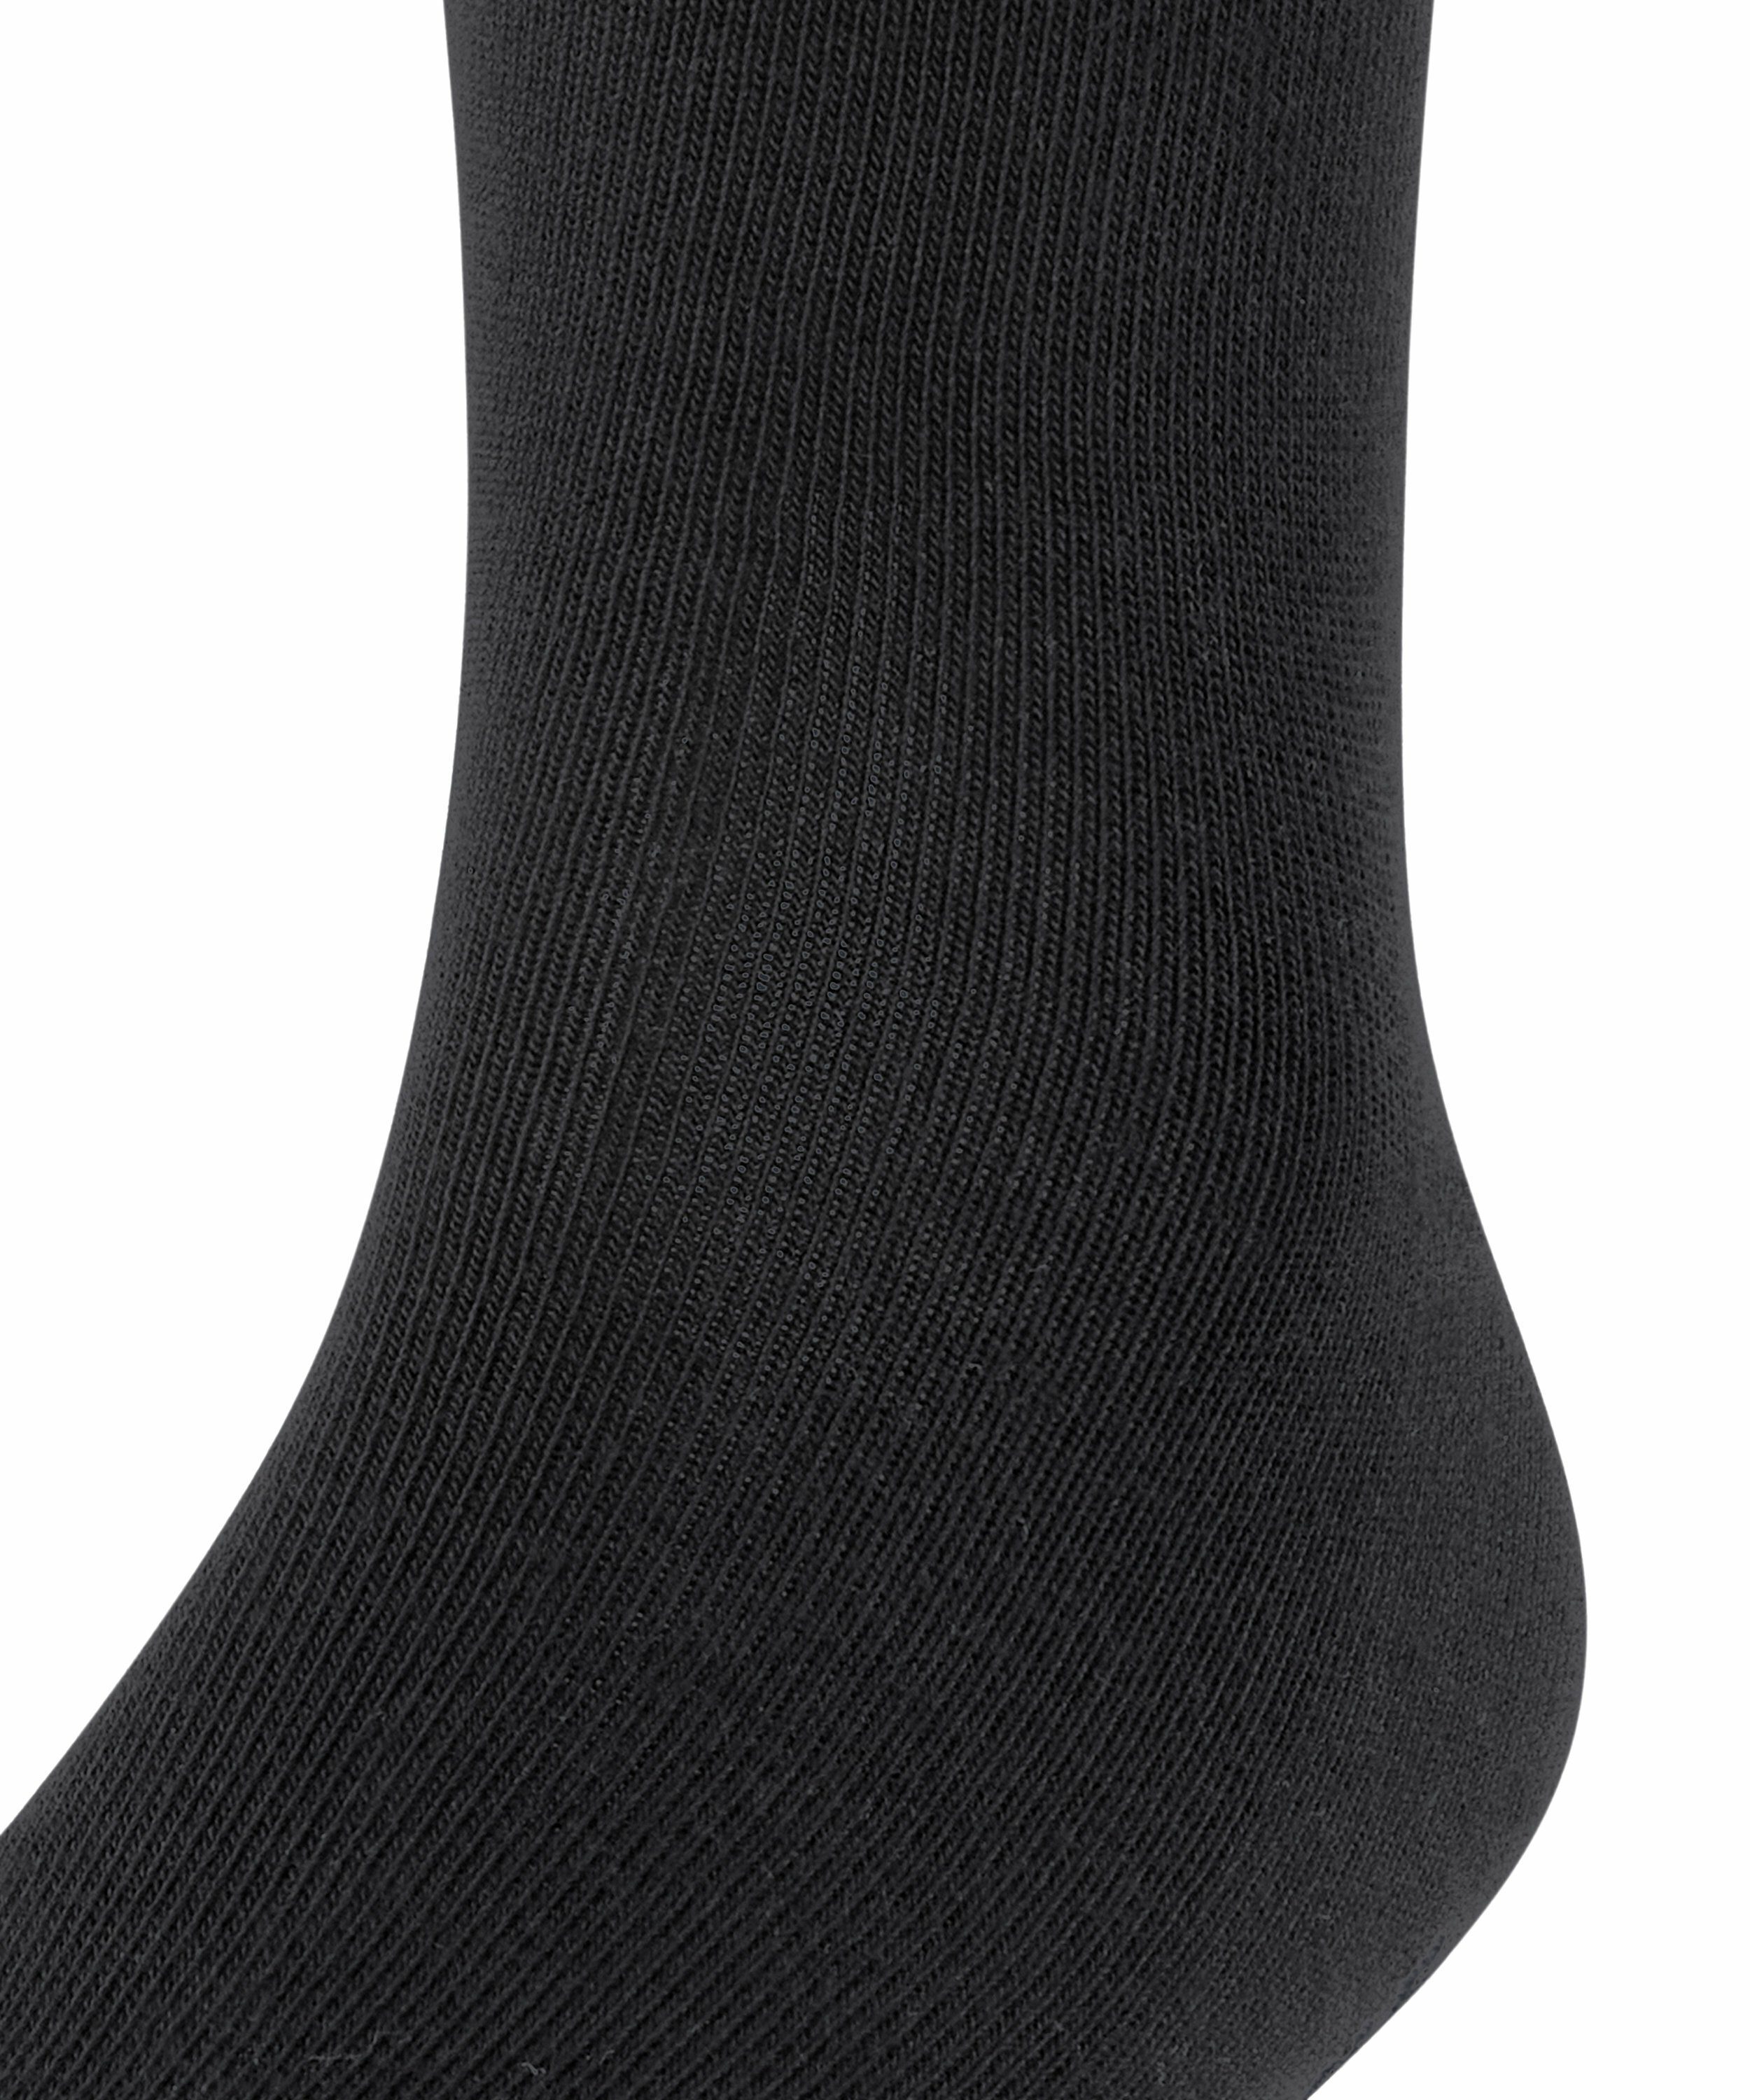 (3000) FALKE Socken Family 3-Pack black (3-Paar)